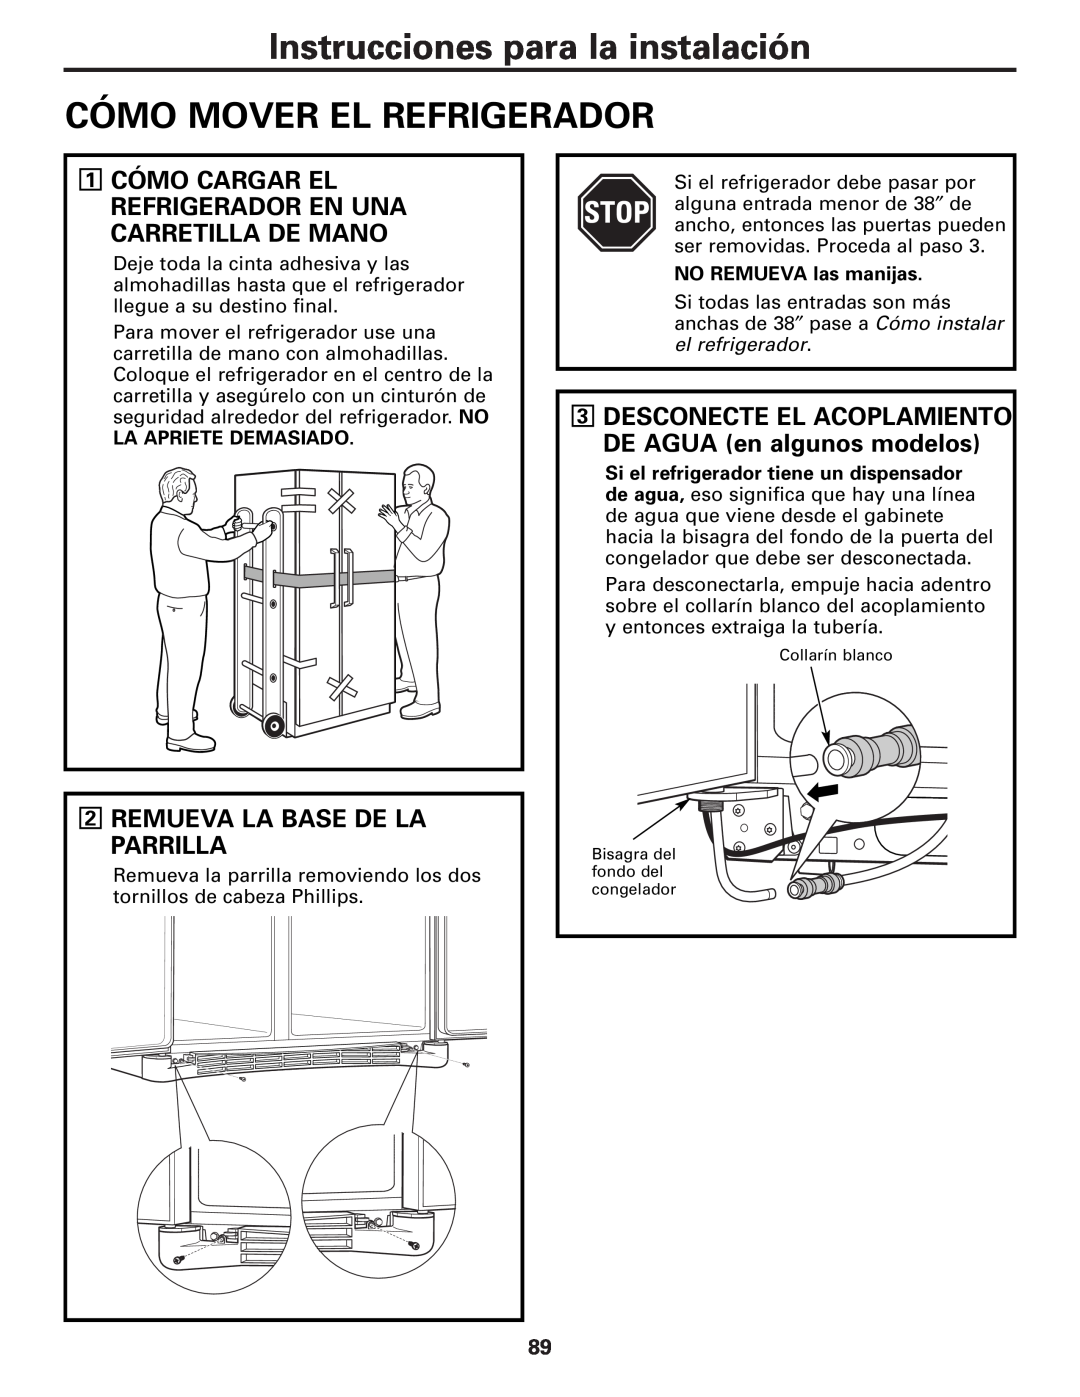 GE 25 and 27 Instrucciones para la instalación, Cómo Mover El Refrigerador, 2REMUEVA LA BASE DE LA PARRILLA 